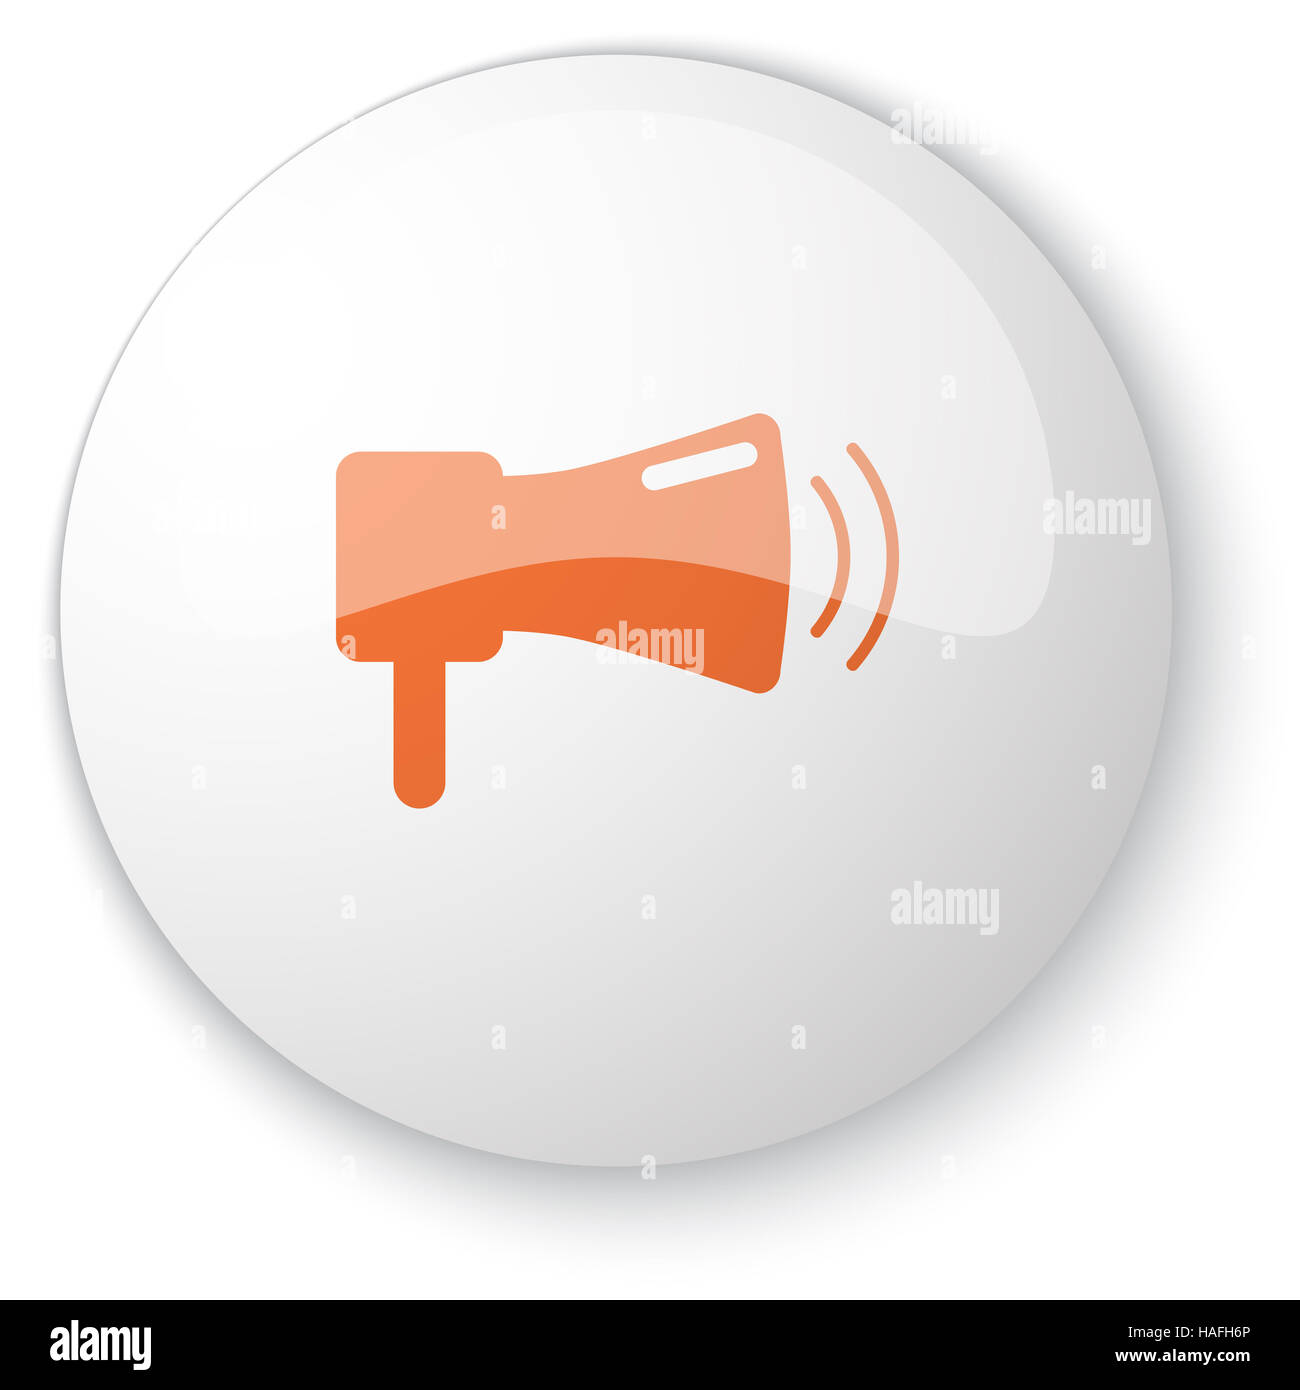 Blanc brillant avec bouton web Megaphone icon orange sur fond blanc Banque D'Images